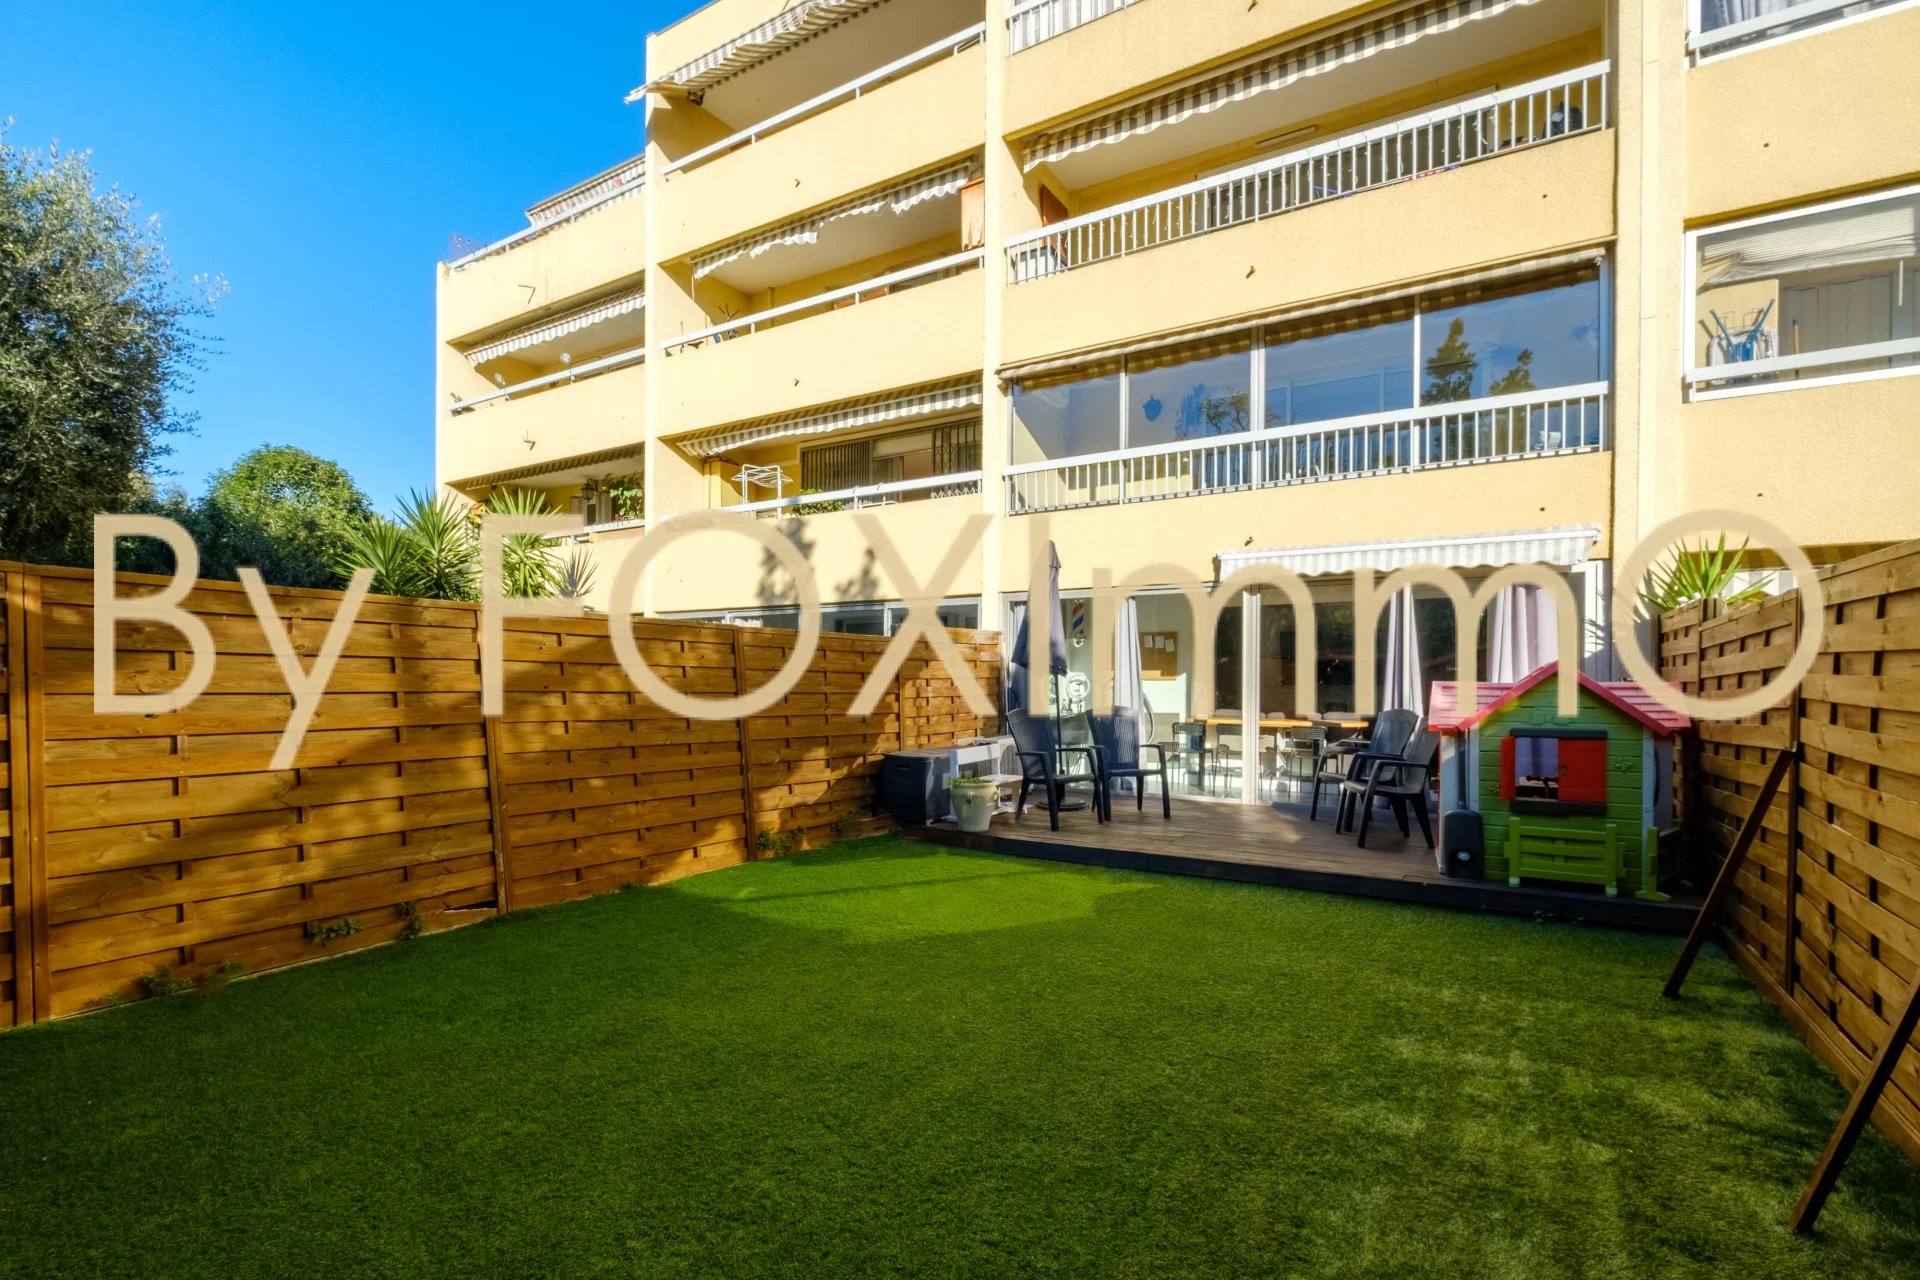 A vendre sur la Côte d'Azur, appartement 3 pièces de 71m² en rez de jardin exposé Ouest